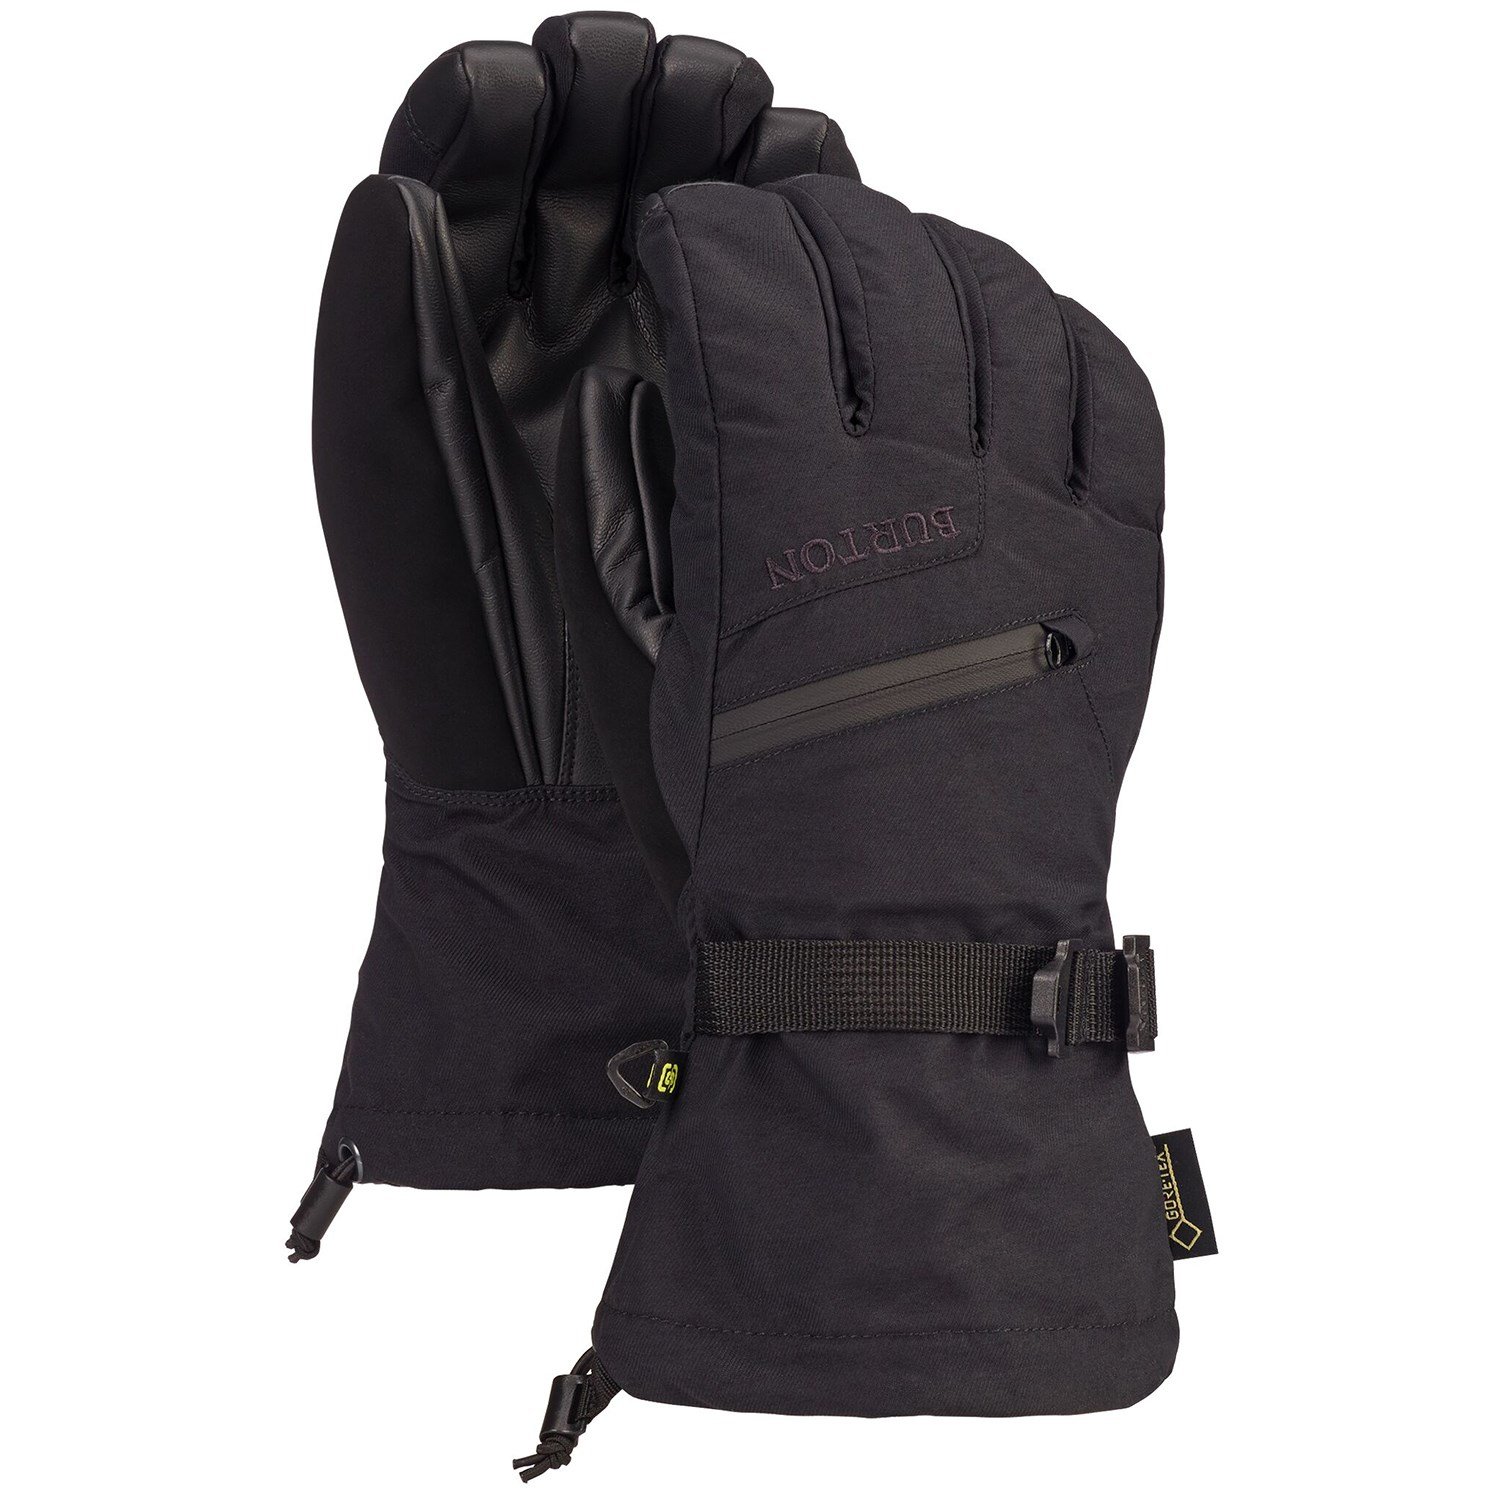 Details about   Burton Gore-Tex Glove Men's Snowboard Gloves Skiing Gloves